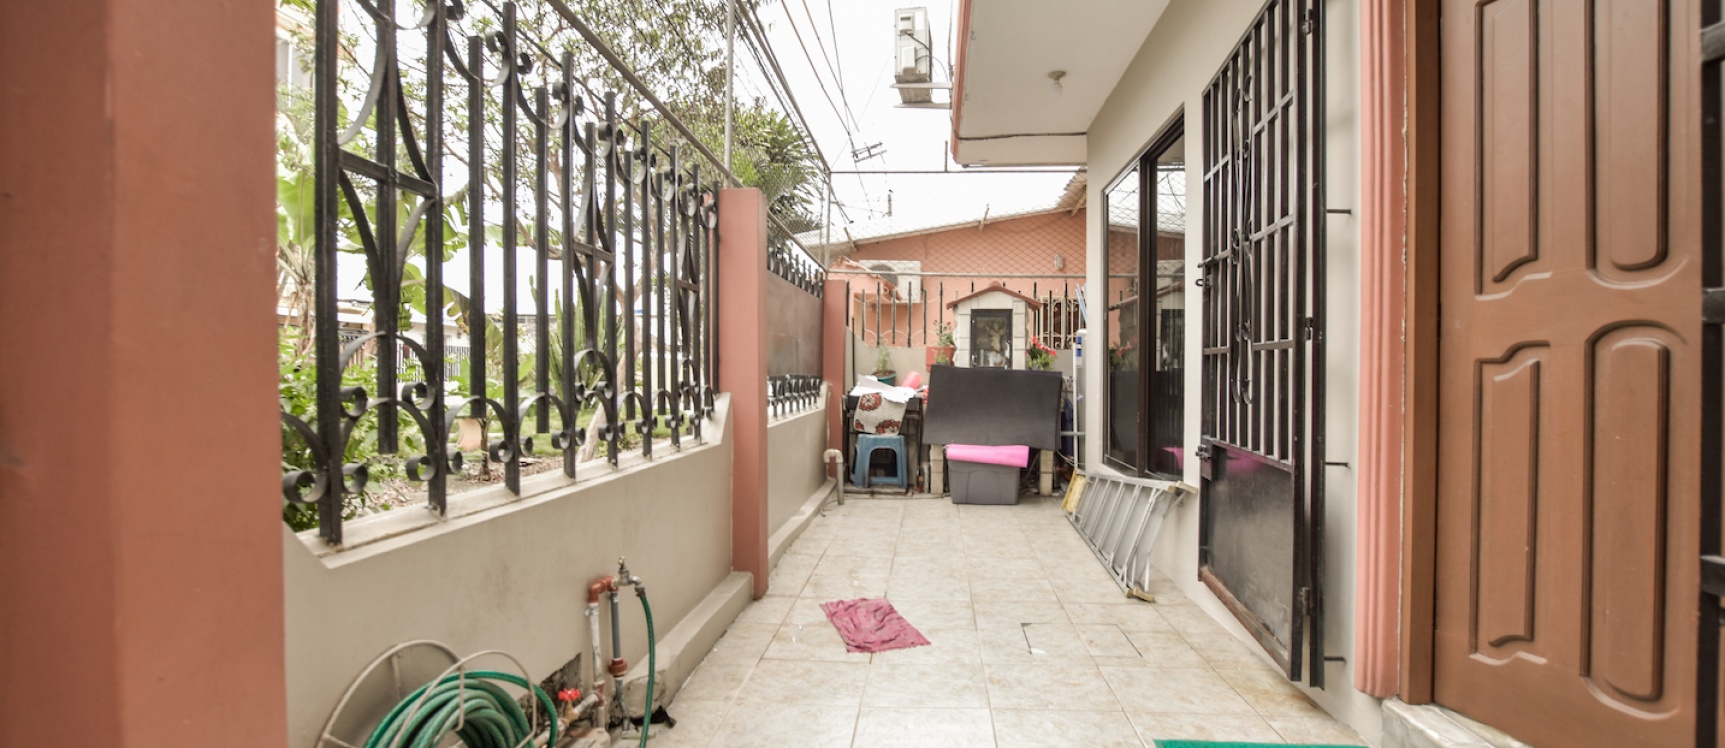 GeoBienes - Casa de 2 plantas en venta ubicada en la Alborada - Plusvalia Guayaquil Casas de venta y alquiler Inmobiliaria Ecuador